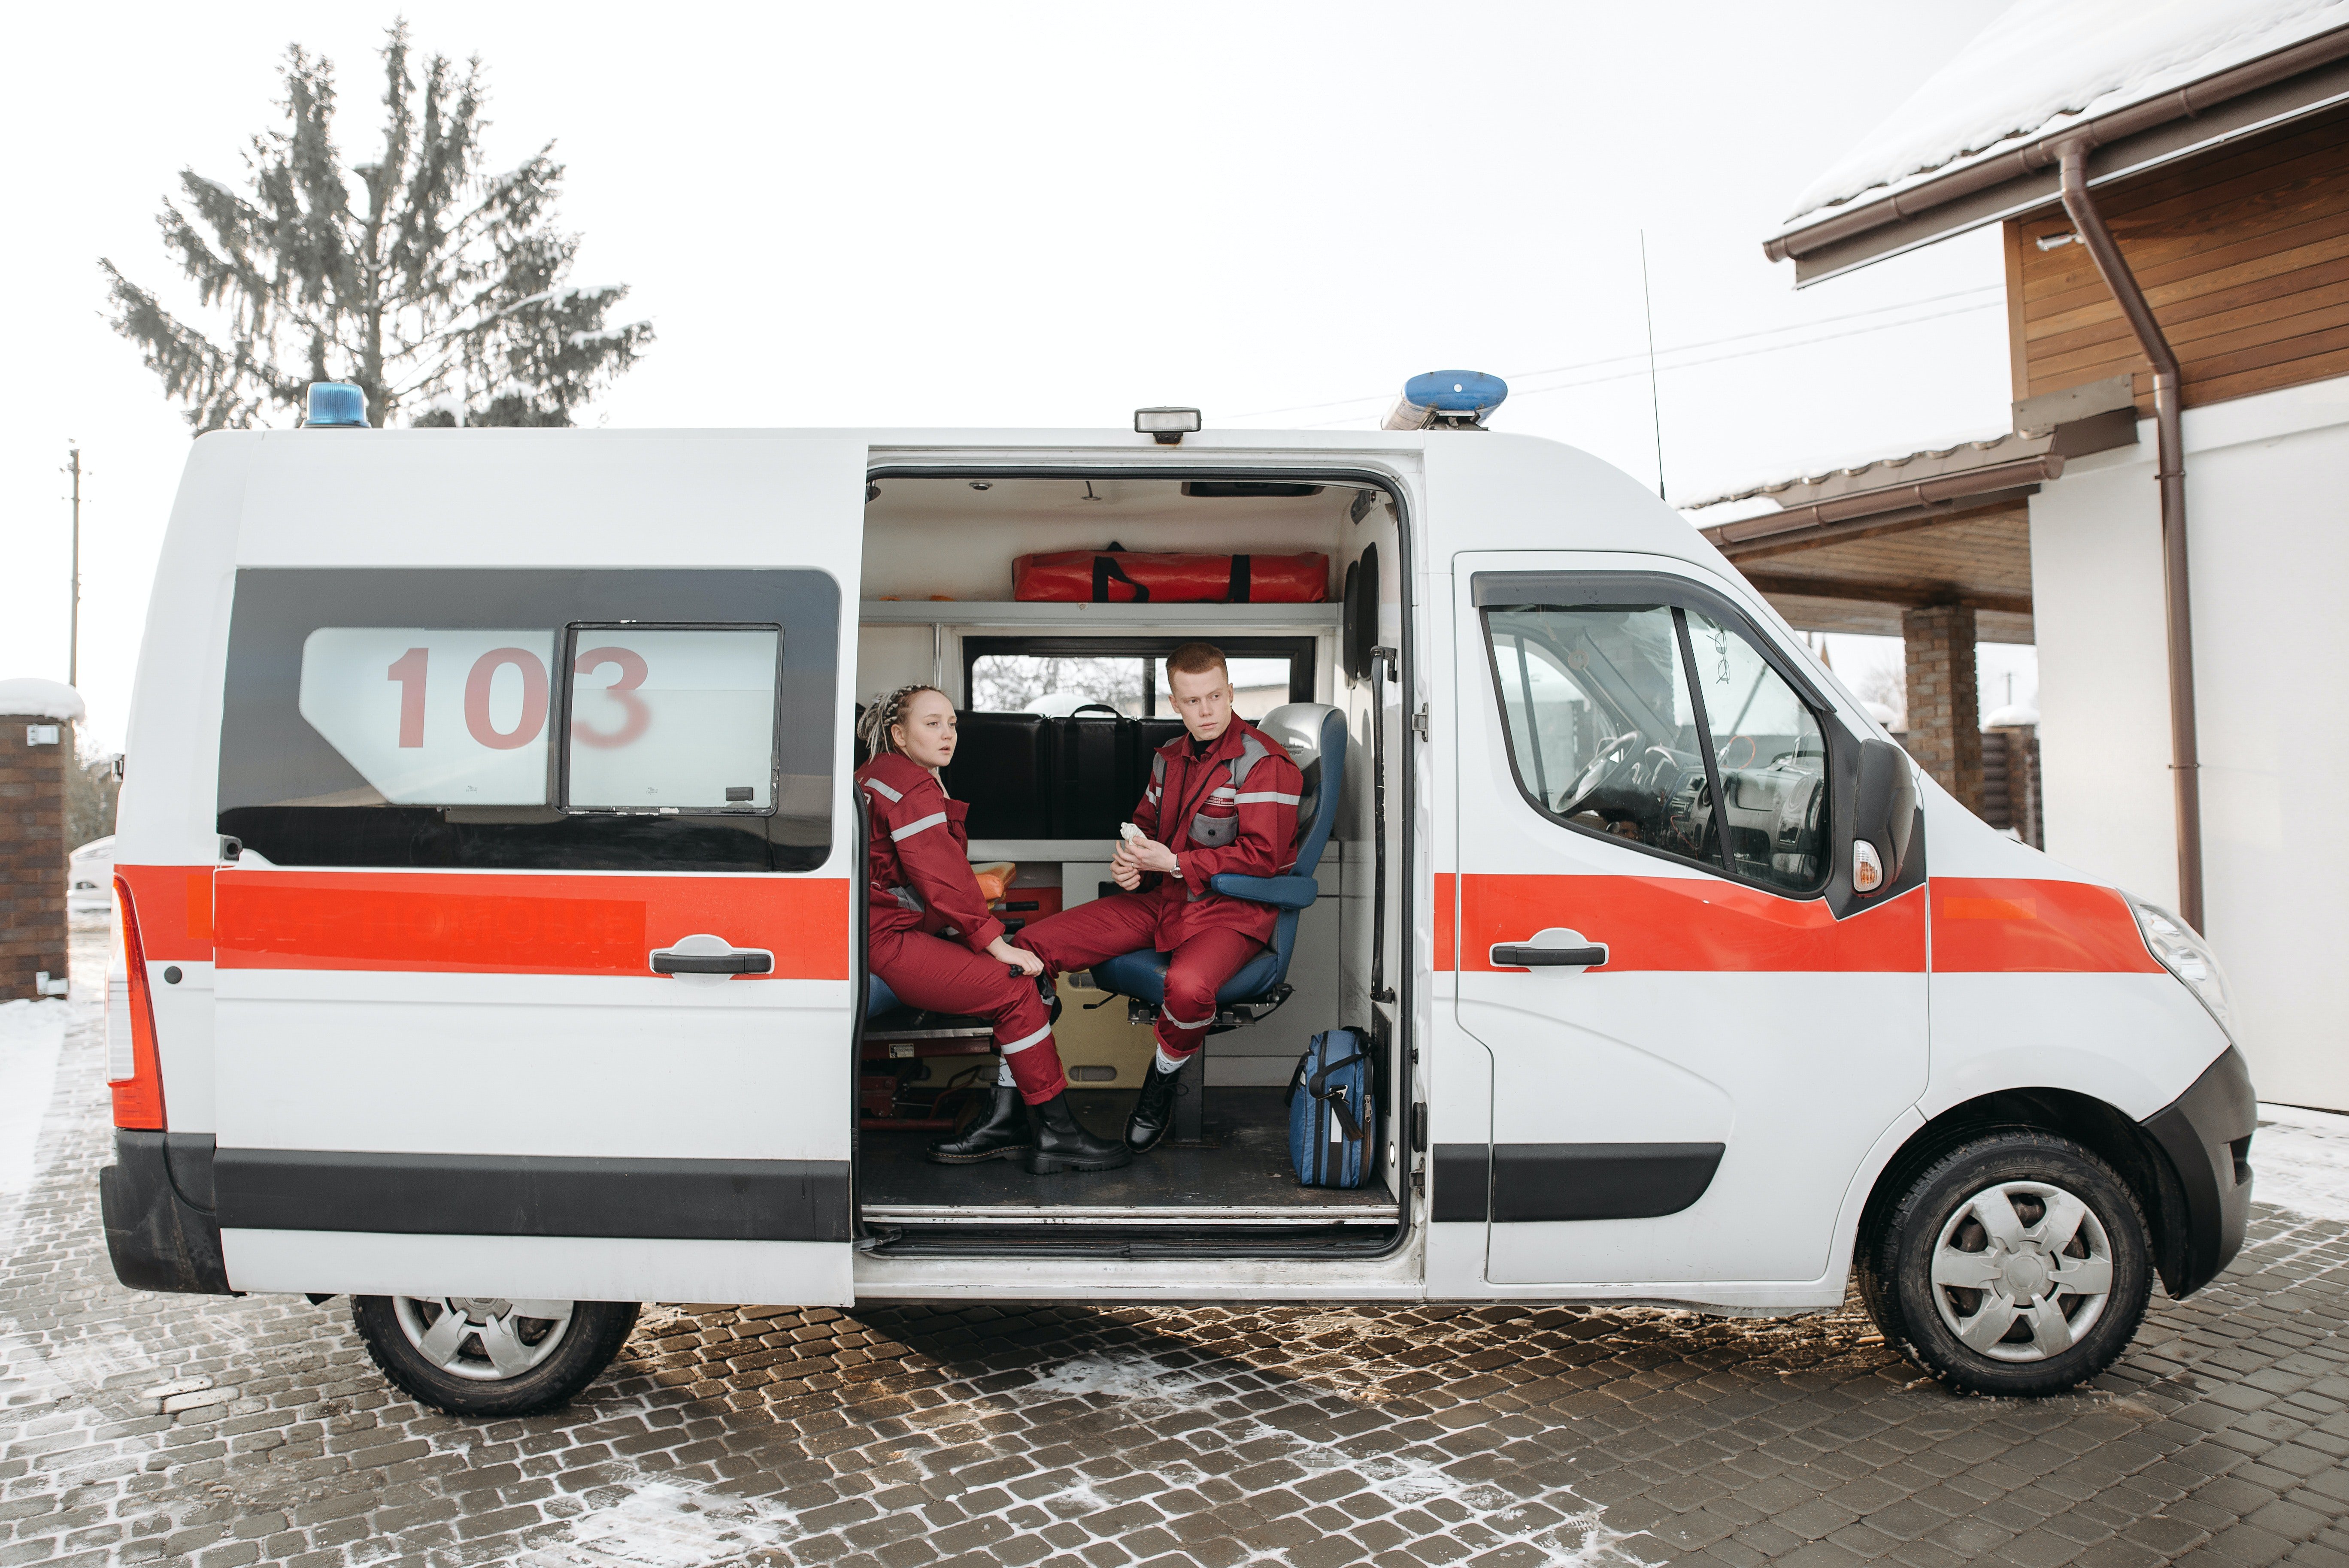 Ambulancia. | Foto: Pexels